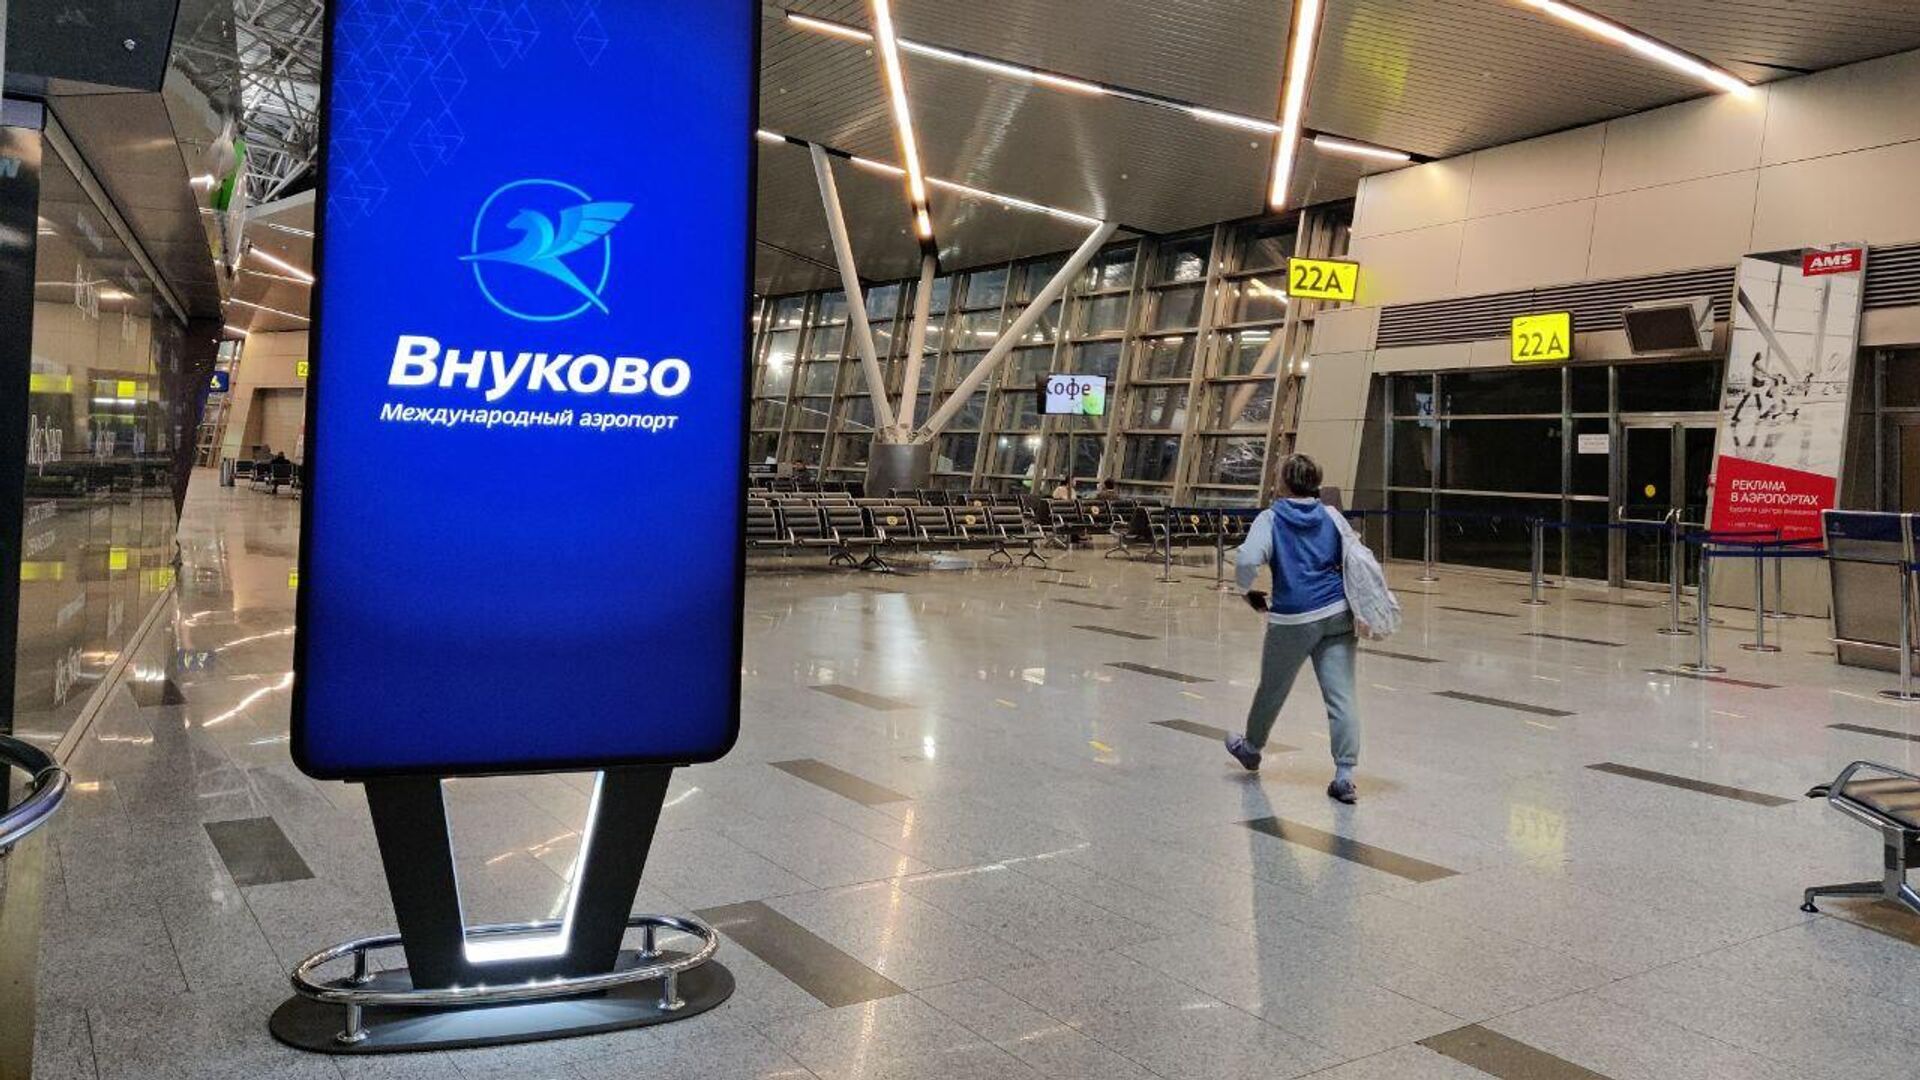 аэропорт внуково столбы с номерами